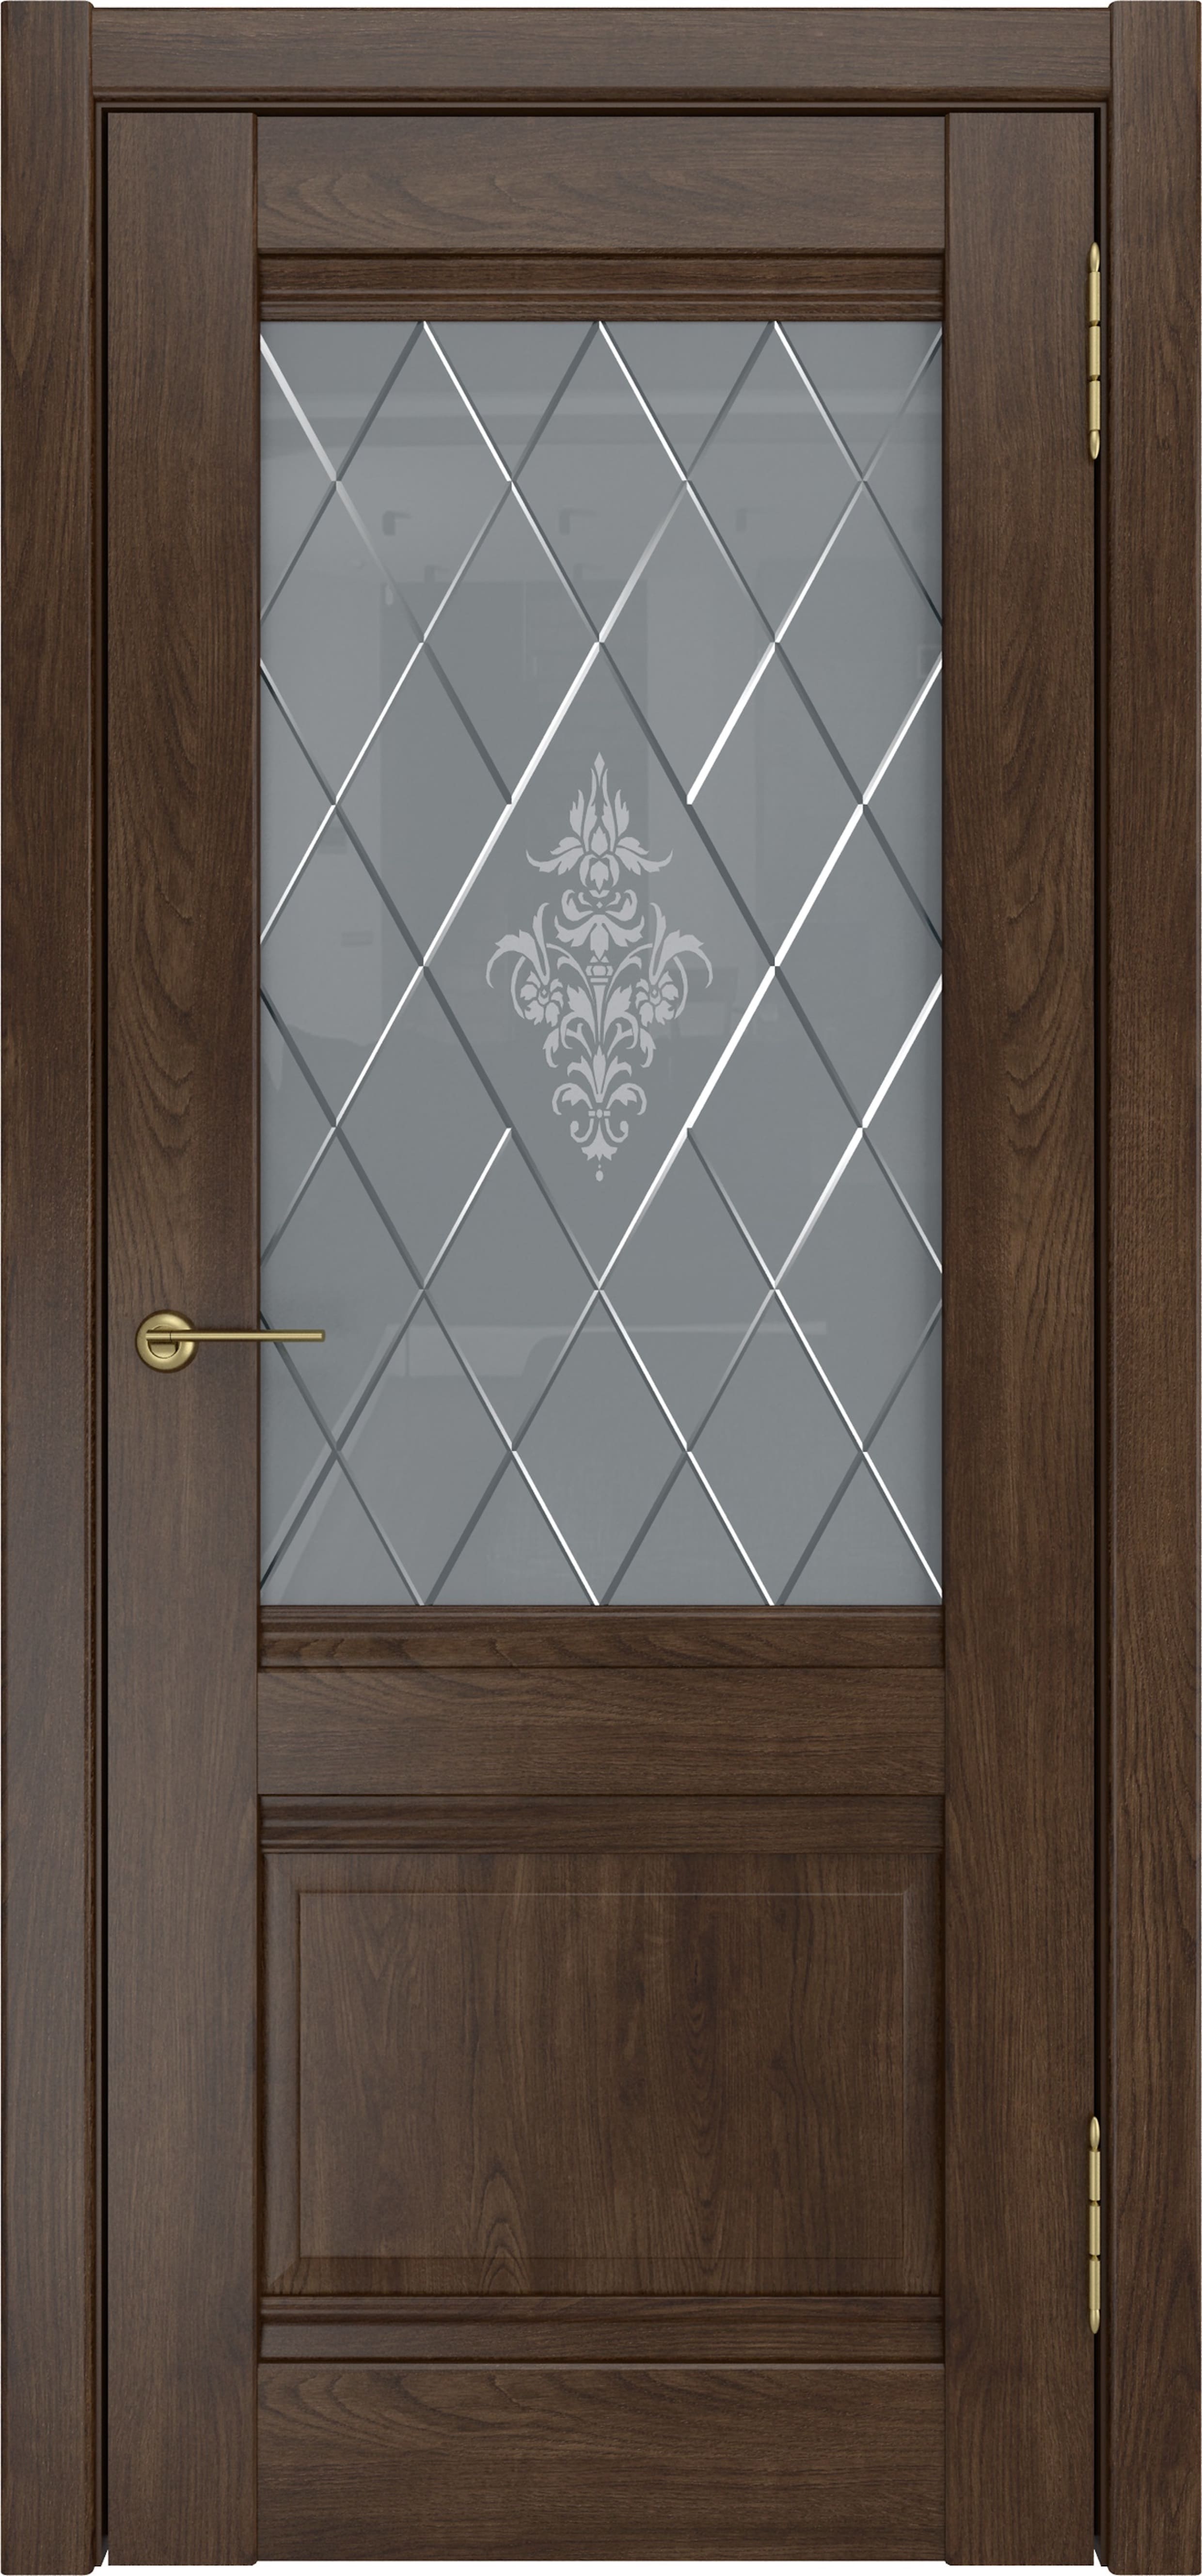 Дверь межкомнатная экошпон ЛУ-52 дуб корица остеклённая (сатинат белый с рисунком)